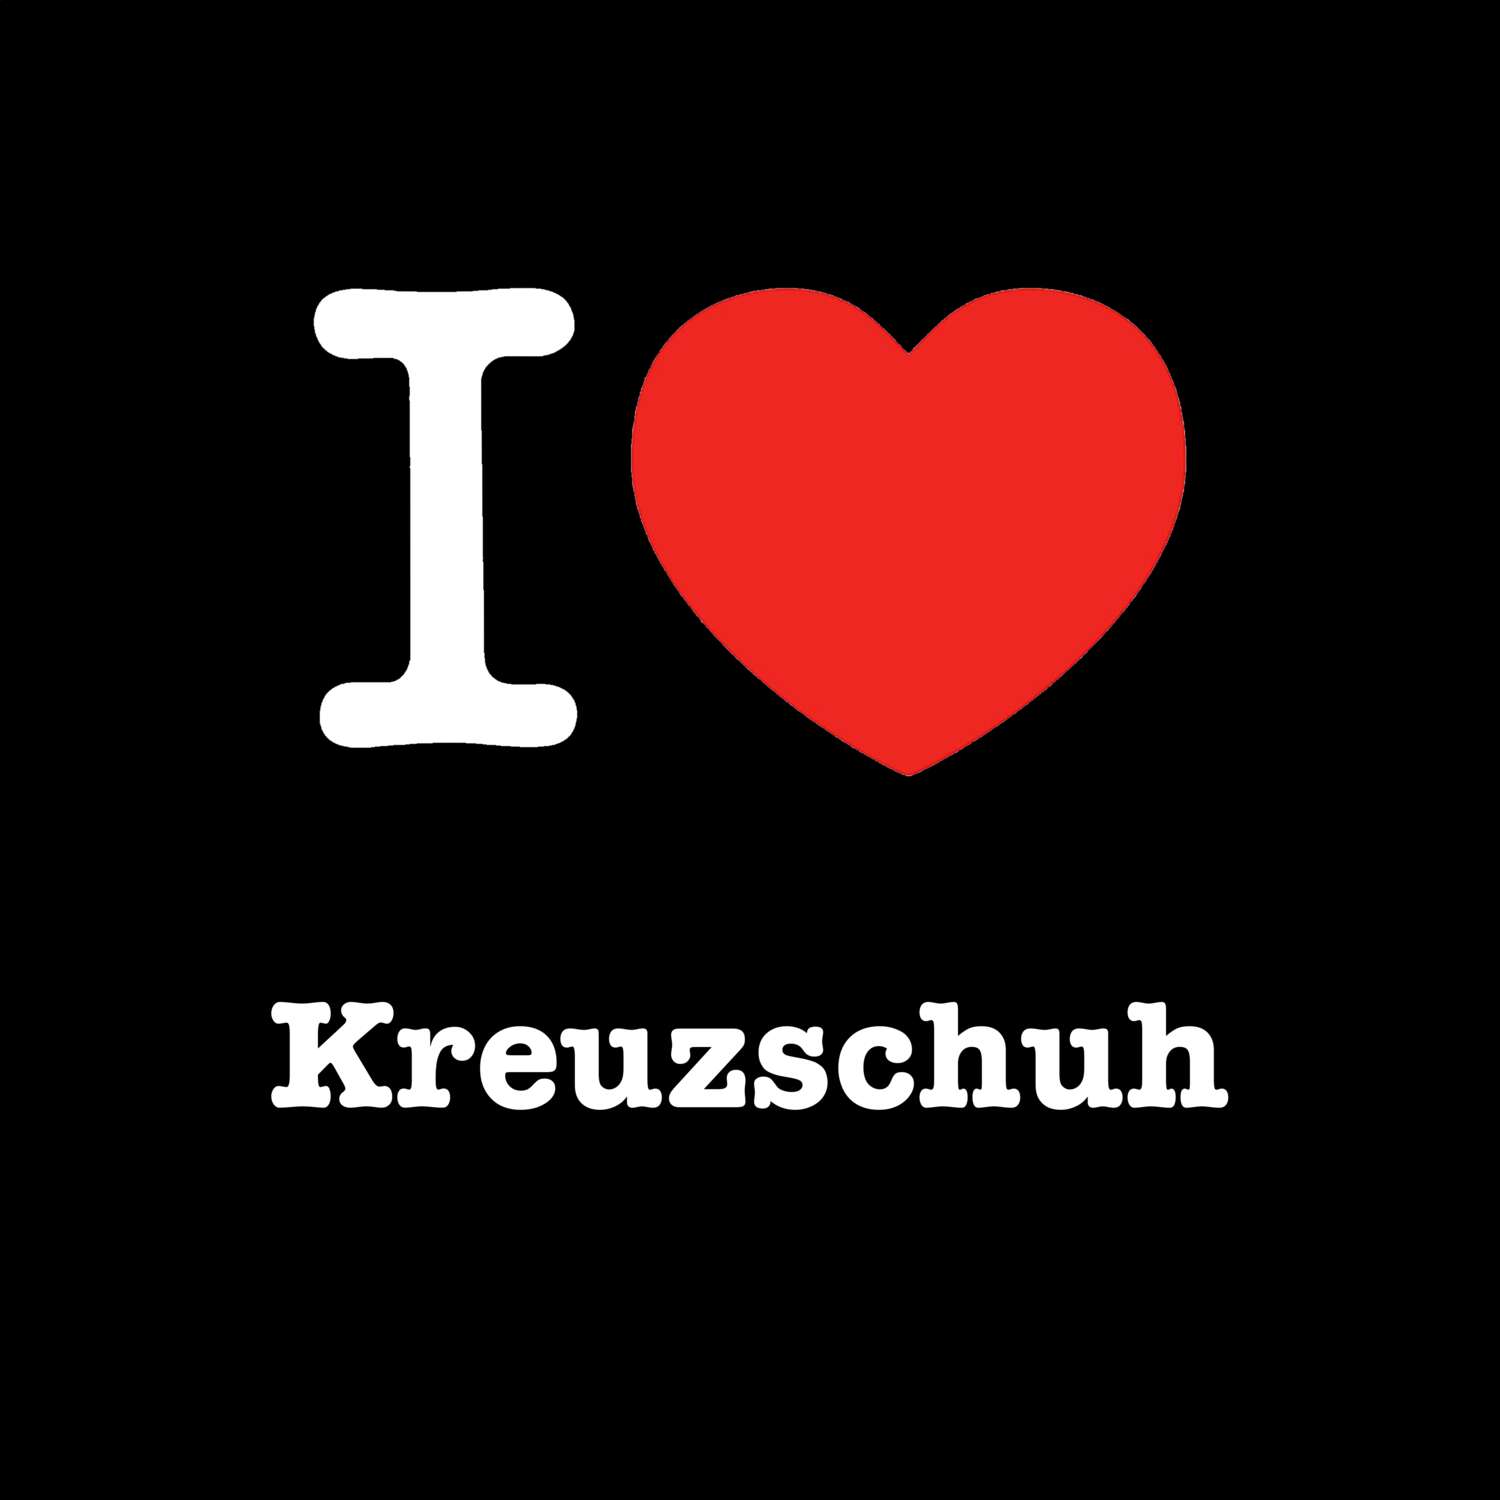 Kreuzschuh T-Shirt »I love«